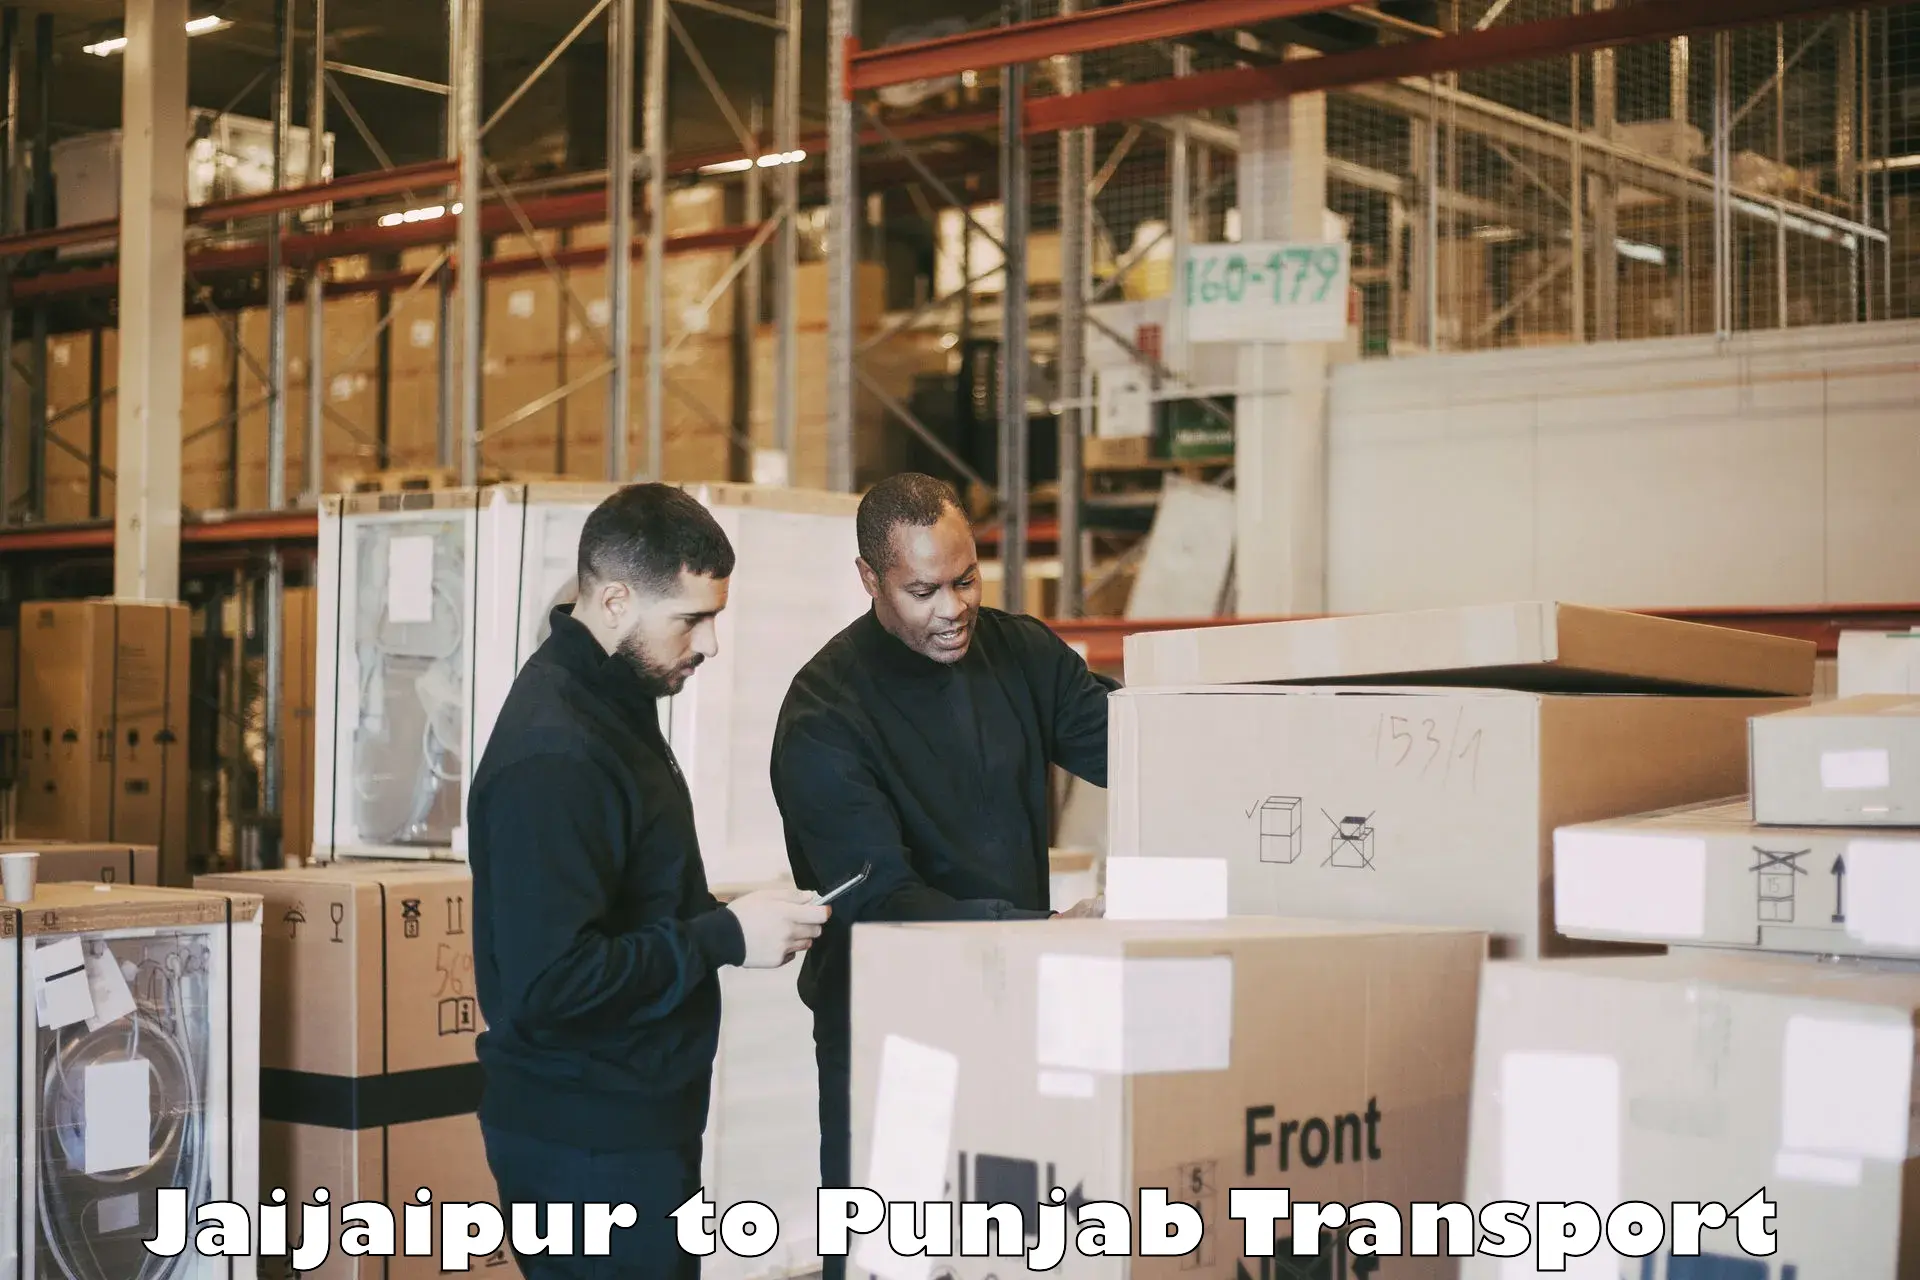 Pick up transport service Jaijaipur to Talwandi Sabo